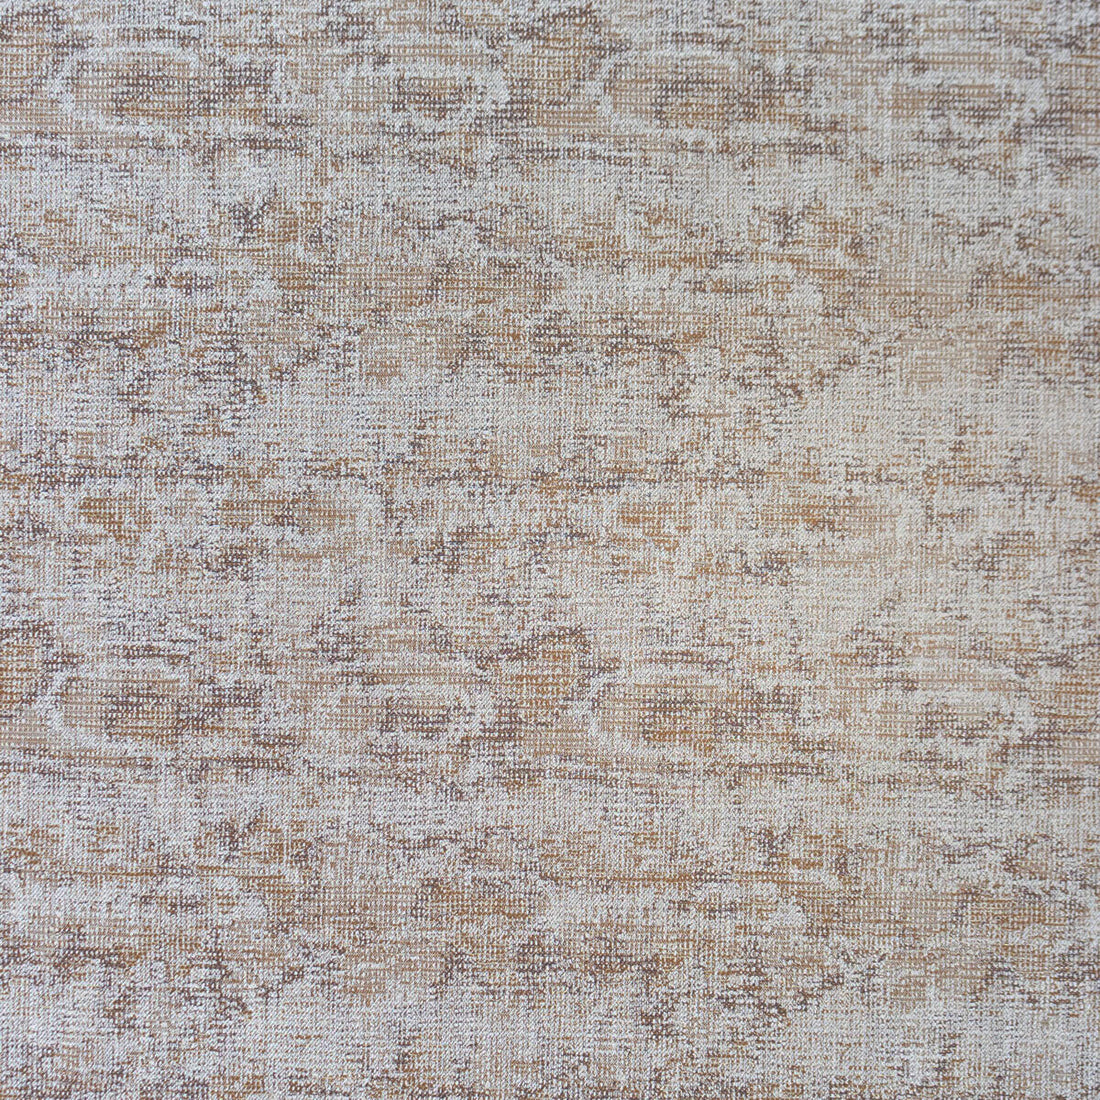 Carbonero fabric in topo color - pattern LCT1049.001.0 - by Gaston y Daniela in the Lorenzo Castillo VI collection